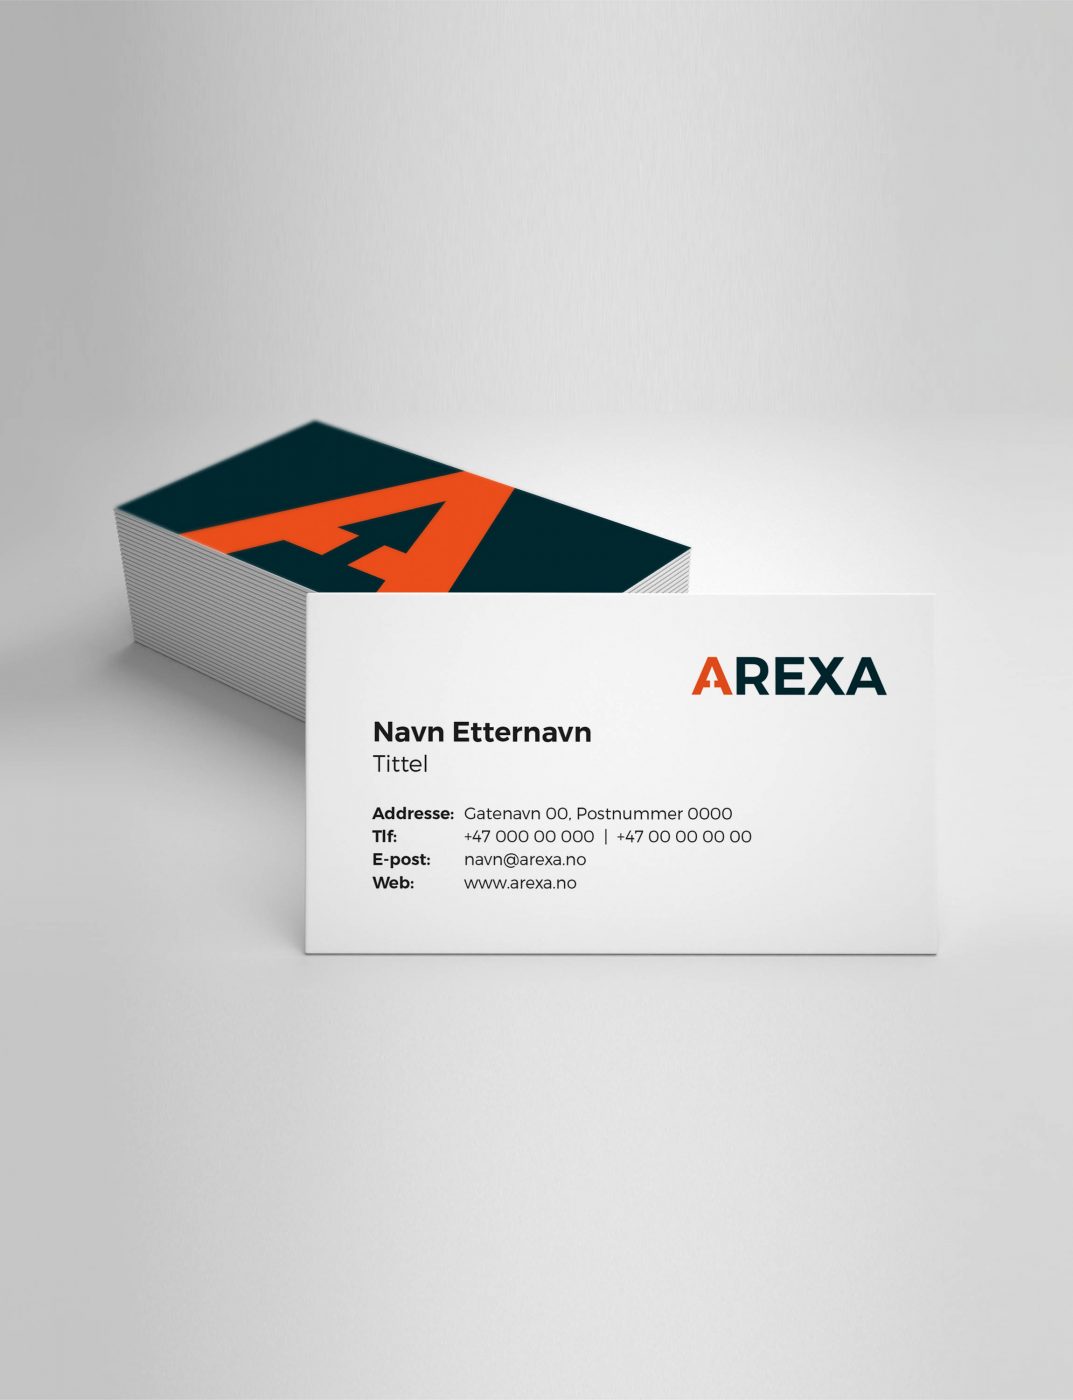 Bilde av en bunke med vistittkort og et visittkort fremhever med Arexa-logo, navn og kontaktinformasjon.